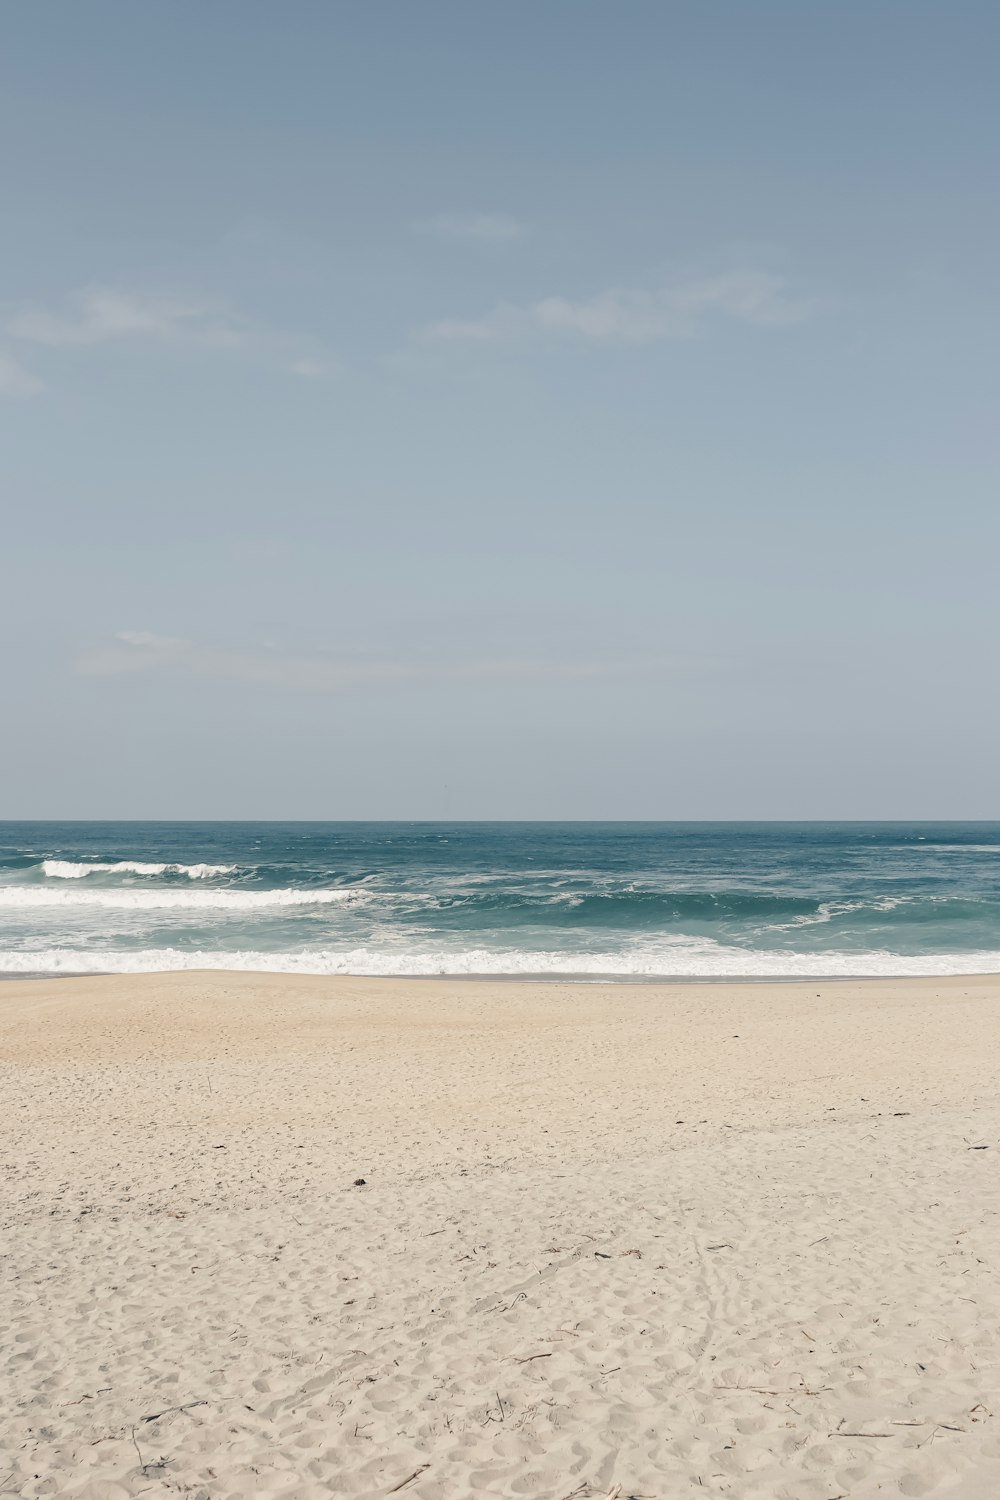 una persona che cammina su una spiaggia che trasporta una tavola da surf